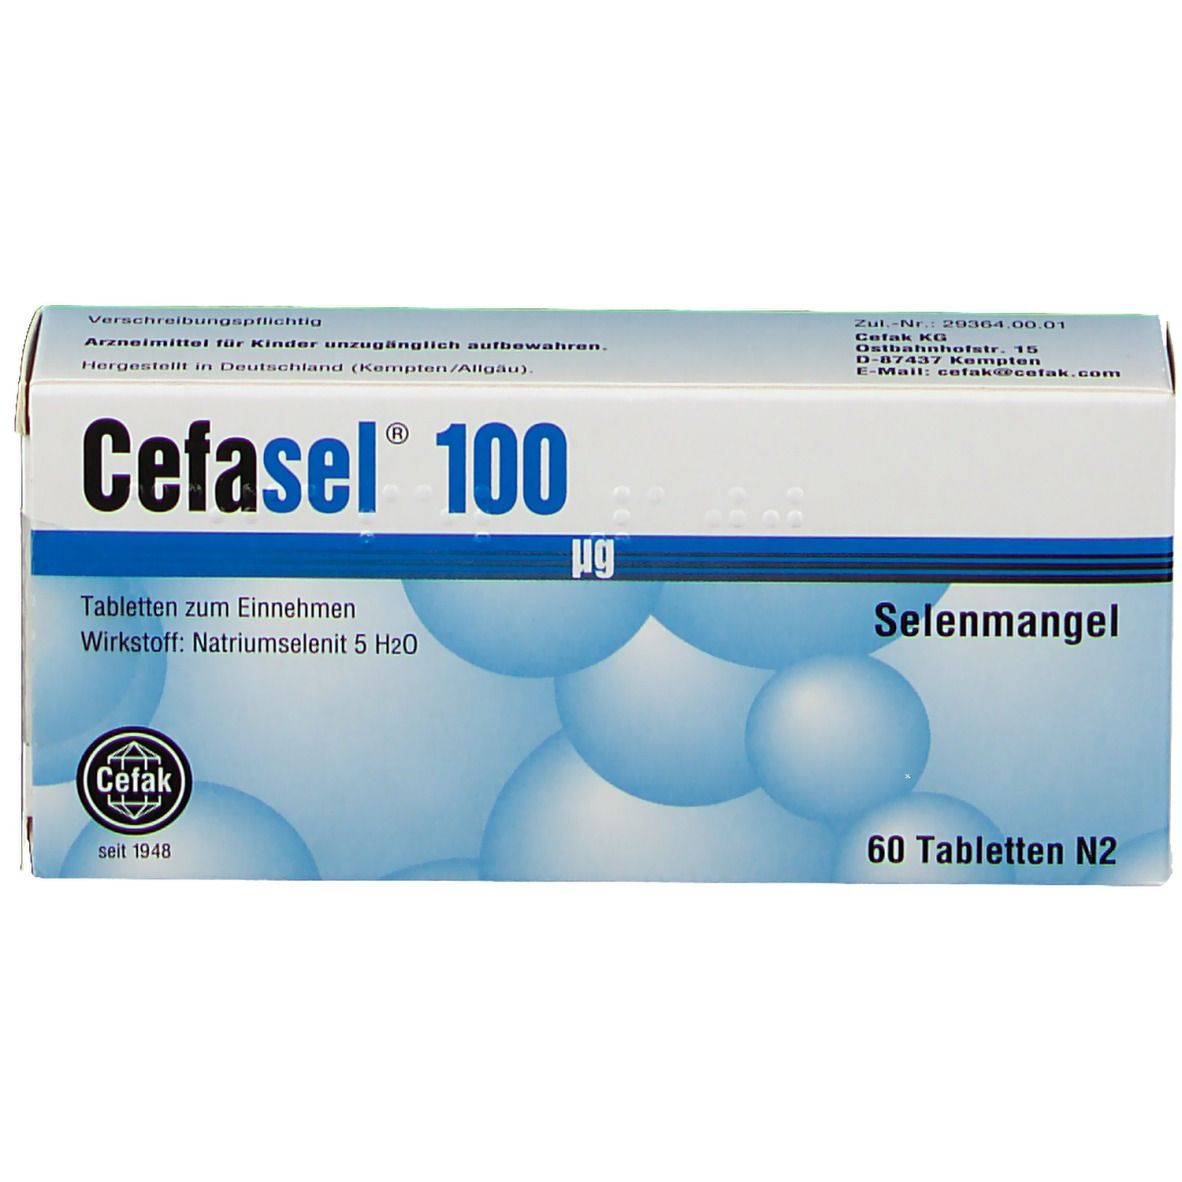 Cefasel® 100 µg